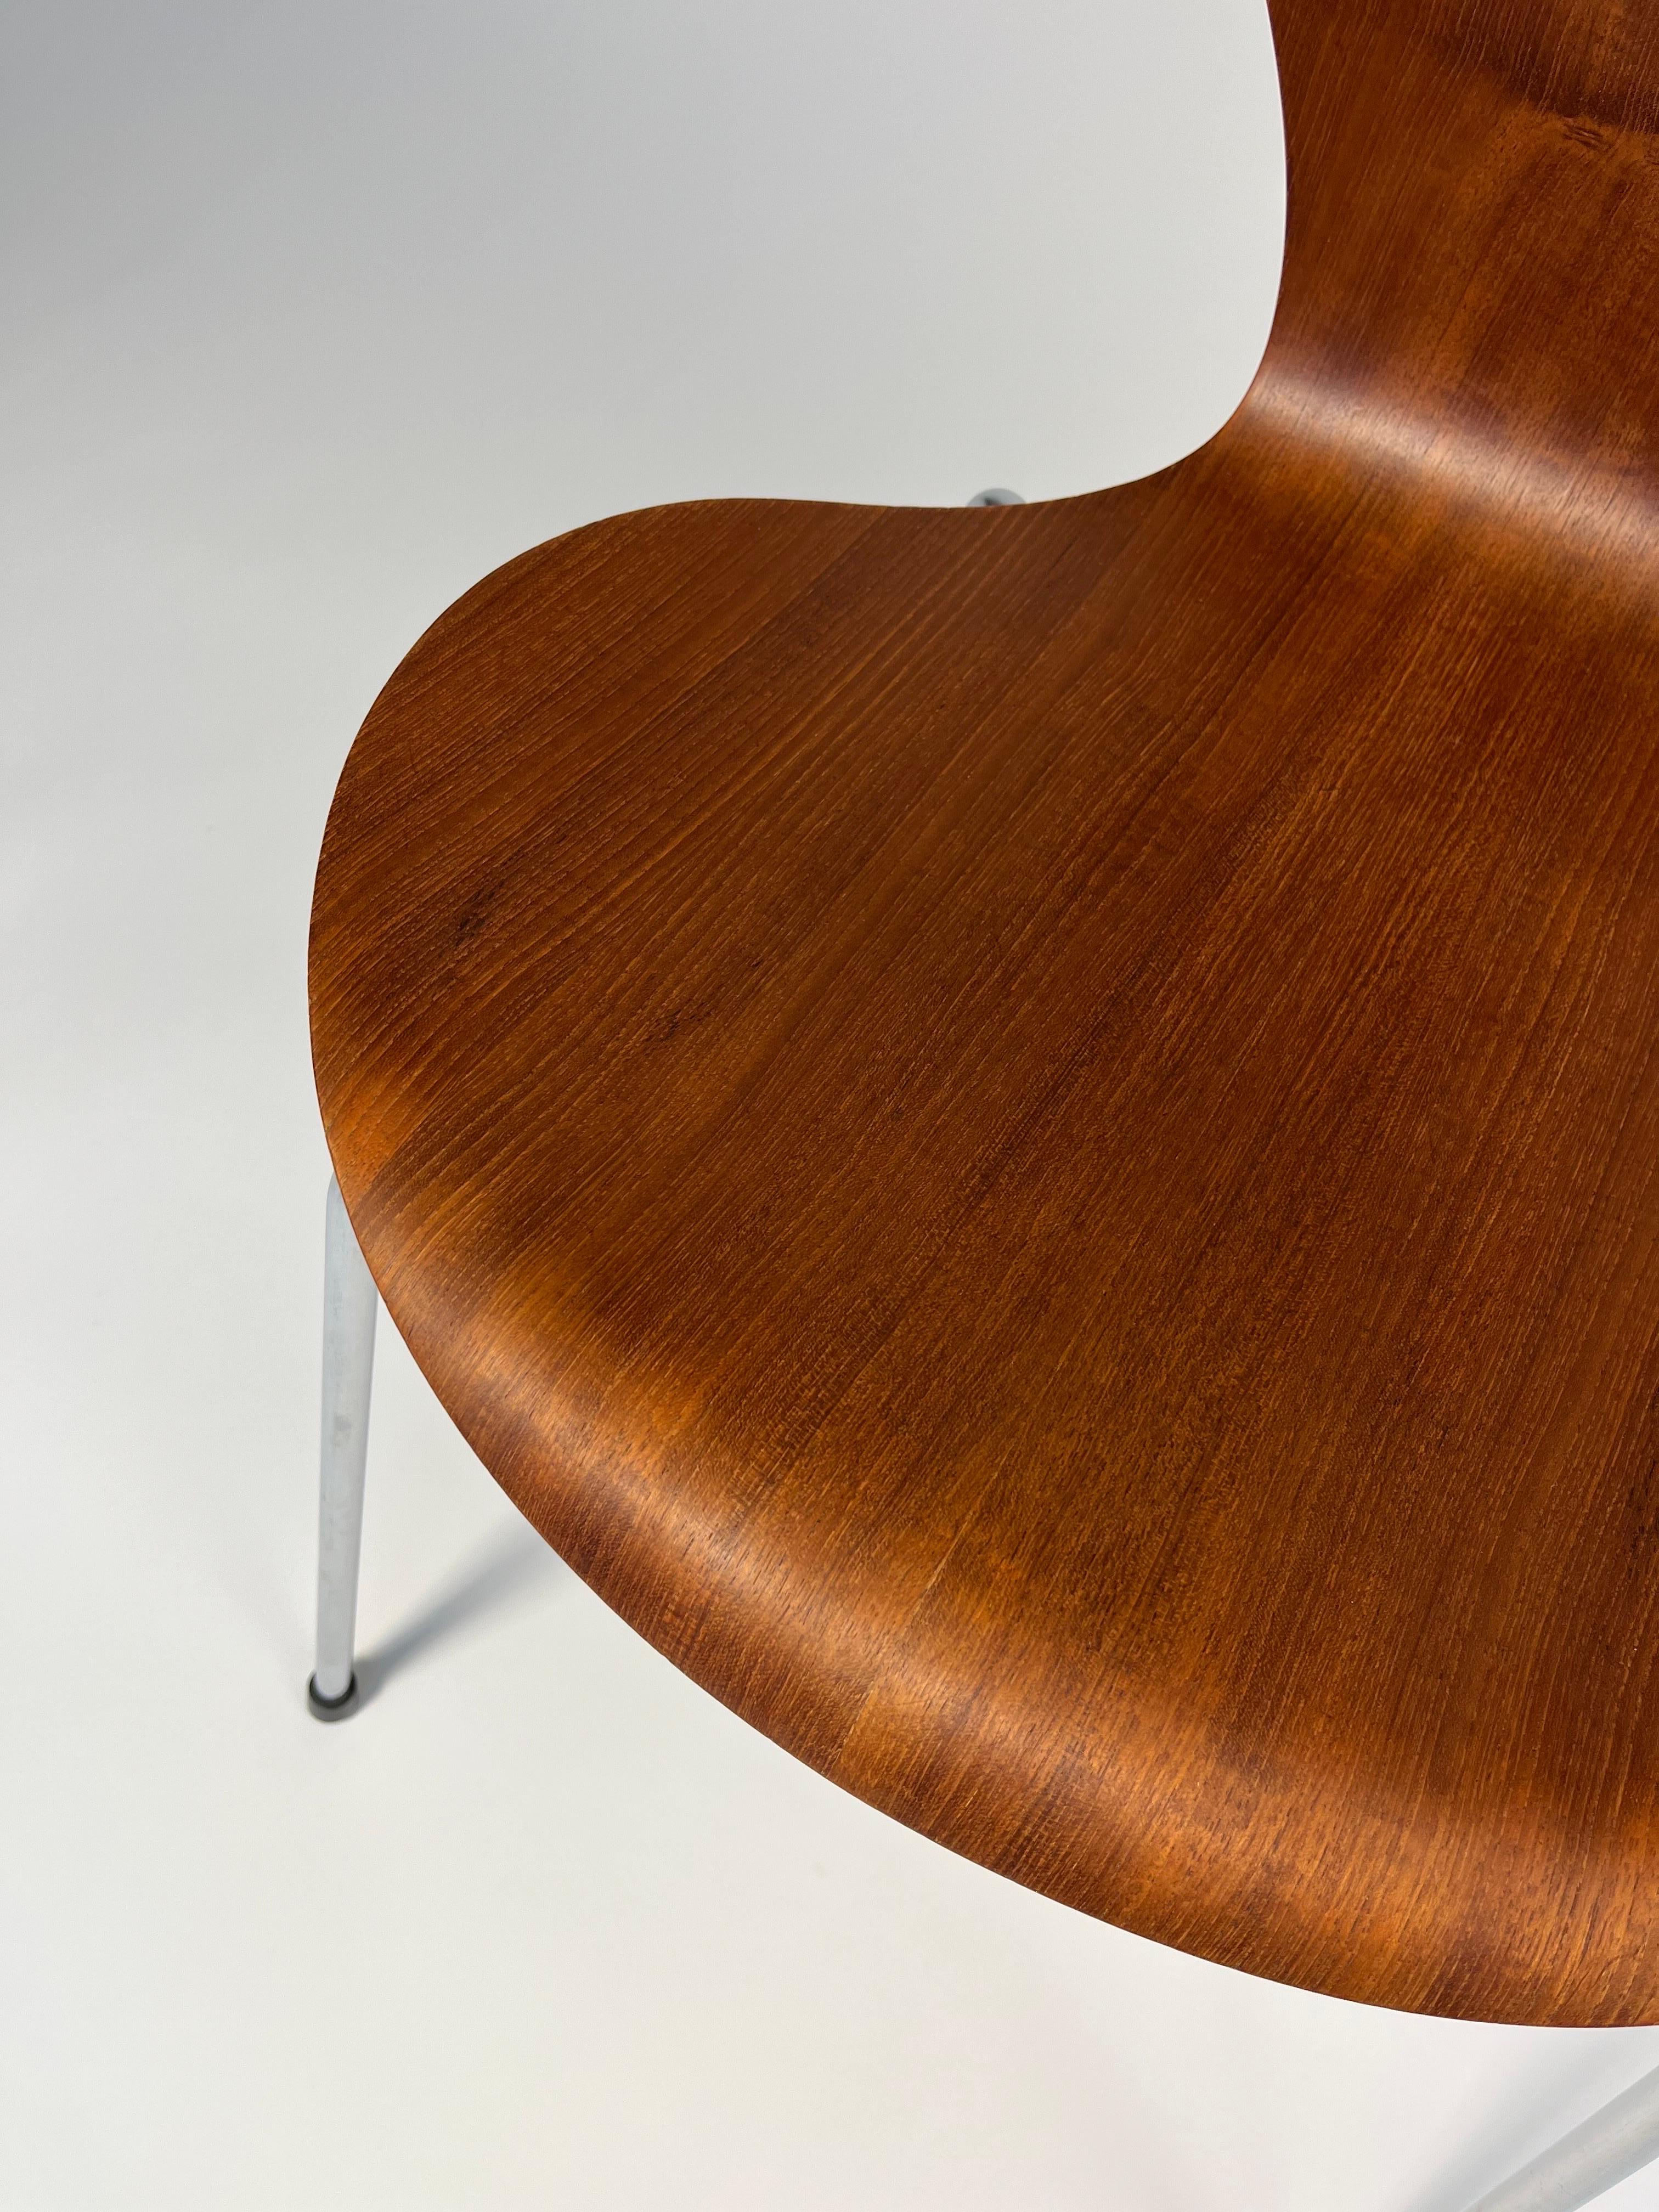 Hand-Crafted Arne Jacobsen Chair Series 7 Teak 3107 Fritz Hansen, 1966